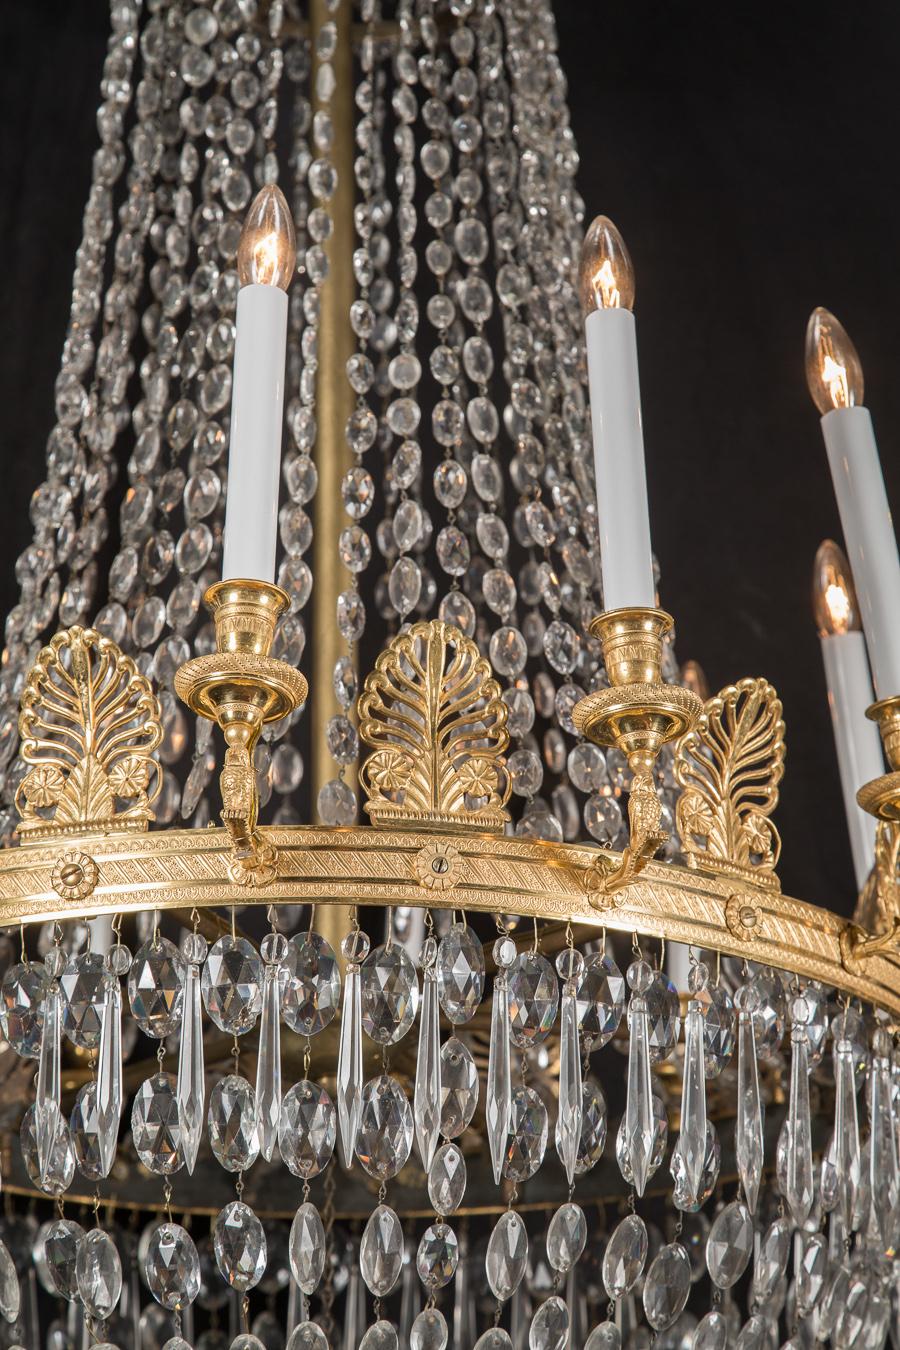 Dieser französische Empire-Kronleuchter aus dem 19. Jahrhundert besteht aus wunderschöner Bronze und einer Vielzahl von Kristallen. Beachten Sie die oval geschliffenen Kristalle, die von oben zum mittleren Ring hin an Größe zunehmen, die spitz